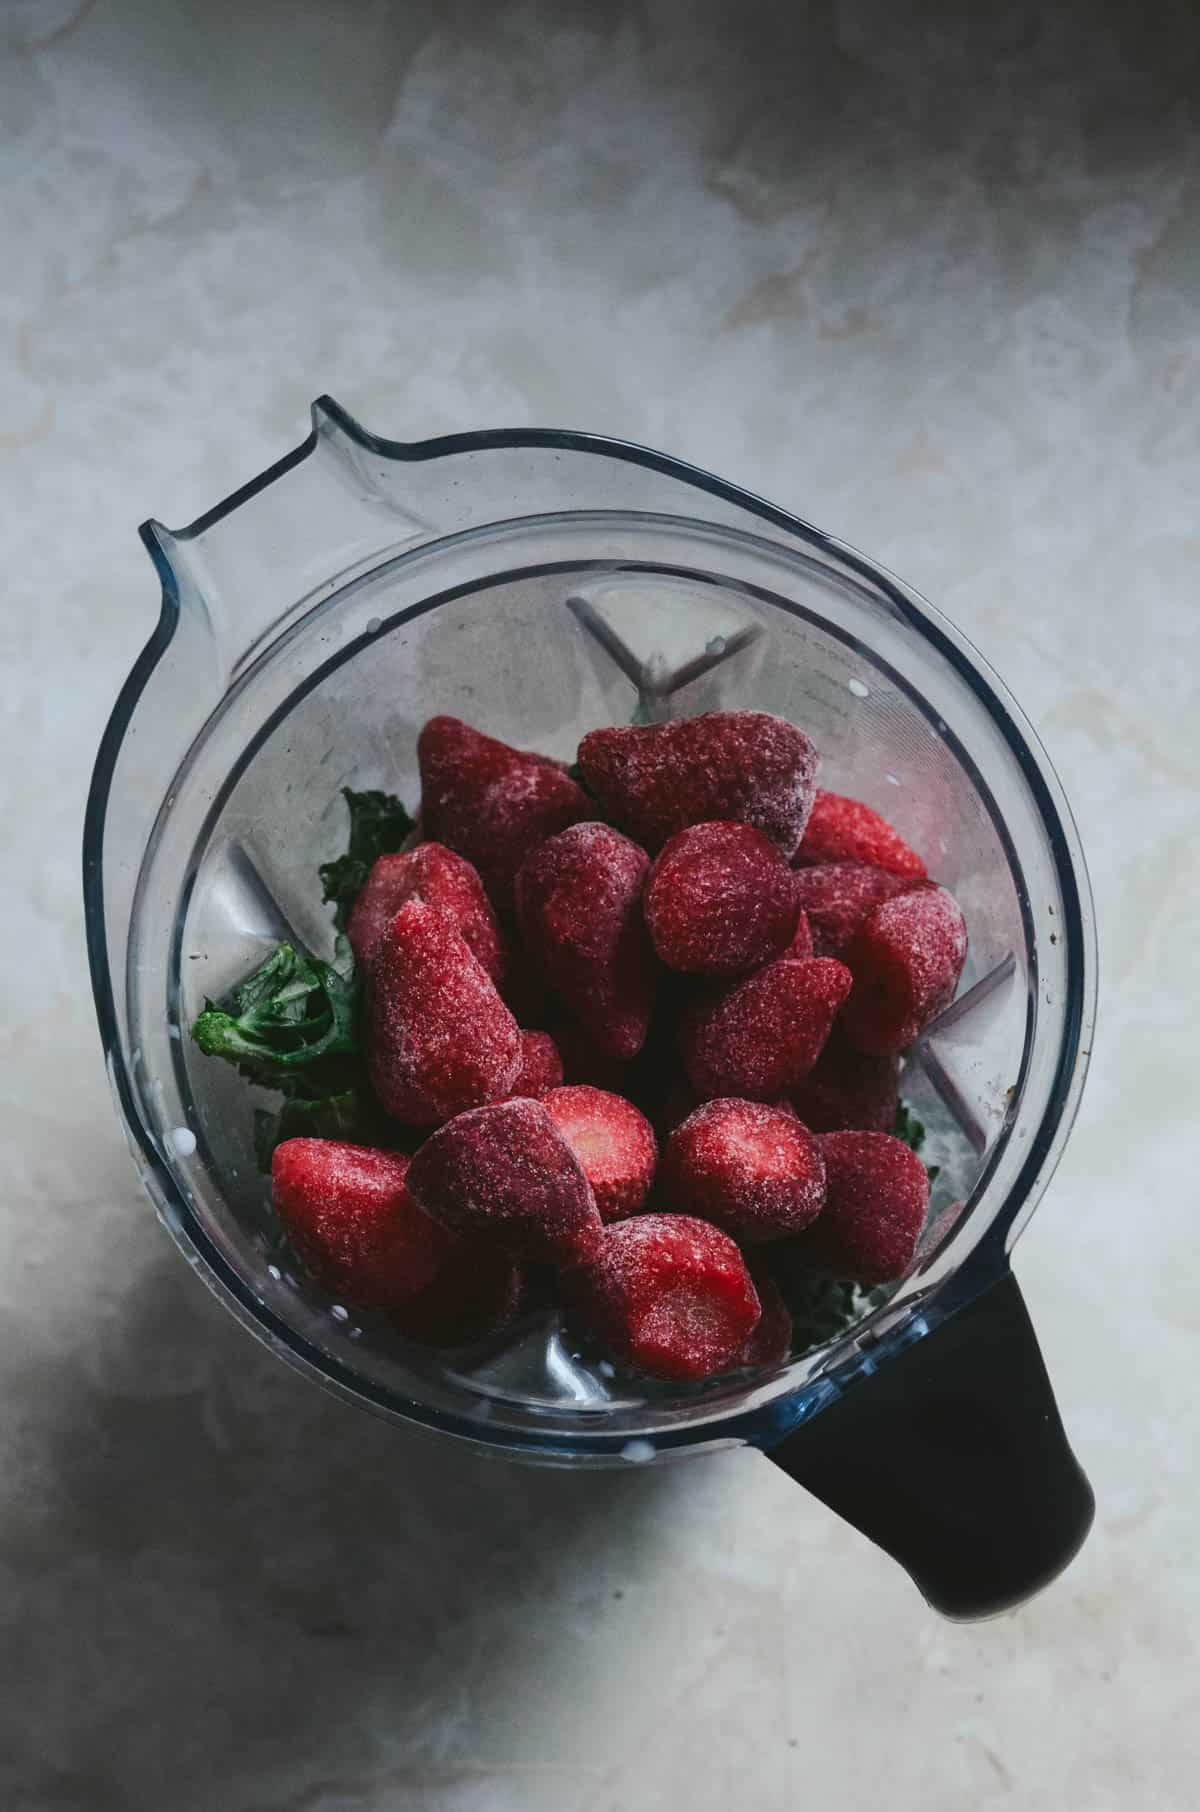 Frozen strawberries on top of kale in vitamix.